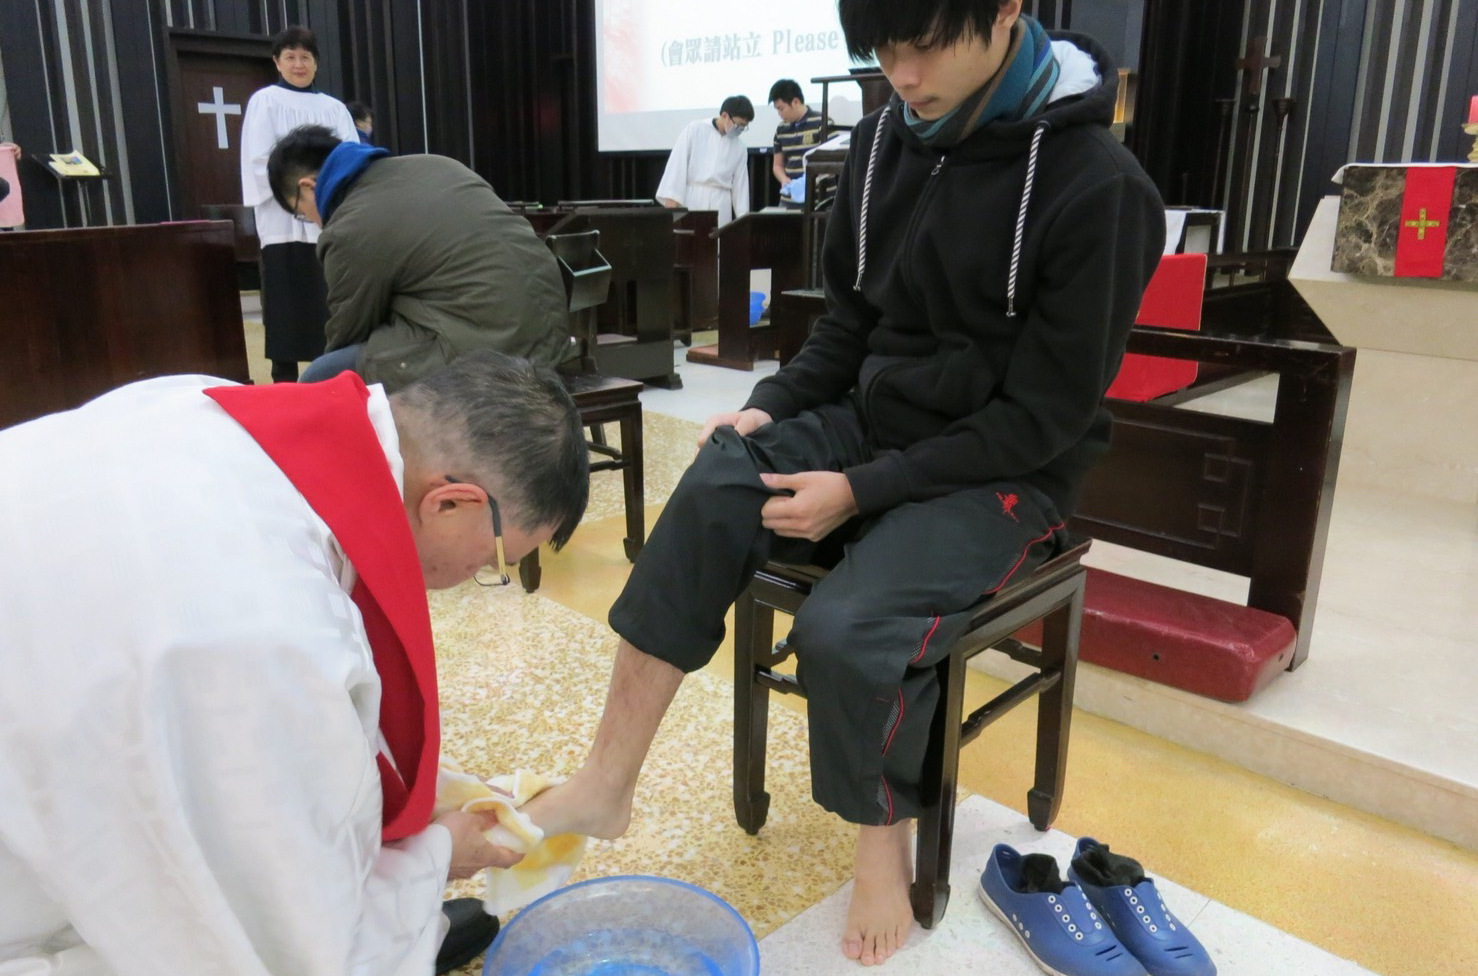 張員榮主教親自為幹部洗腳。(台灣聖公會提供)